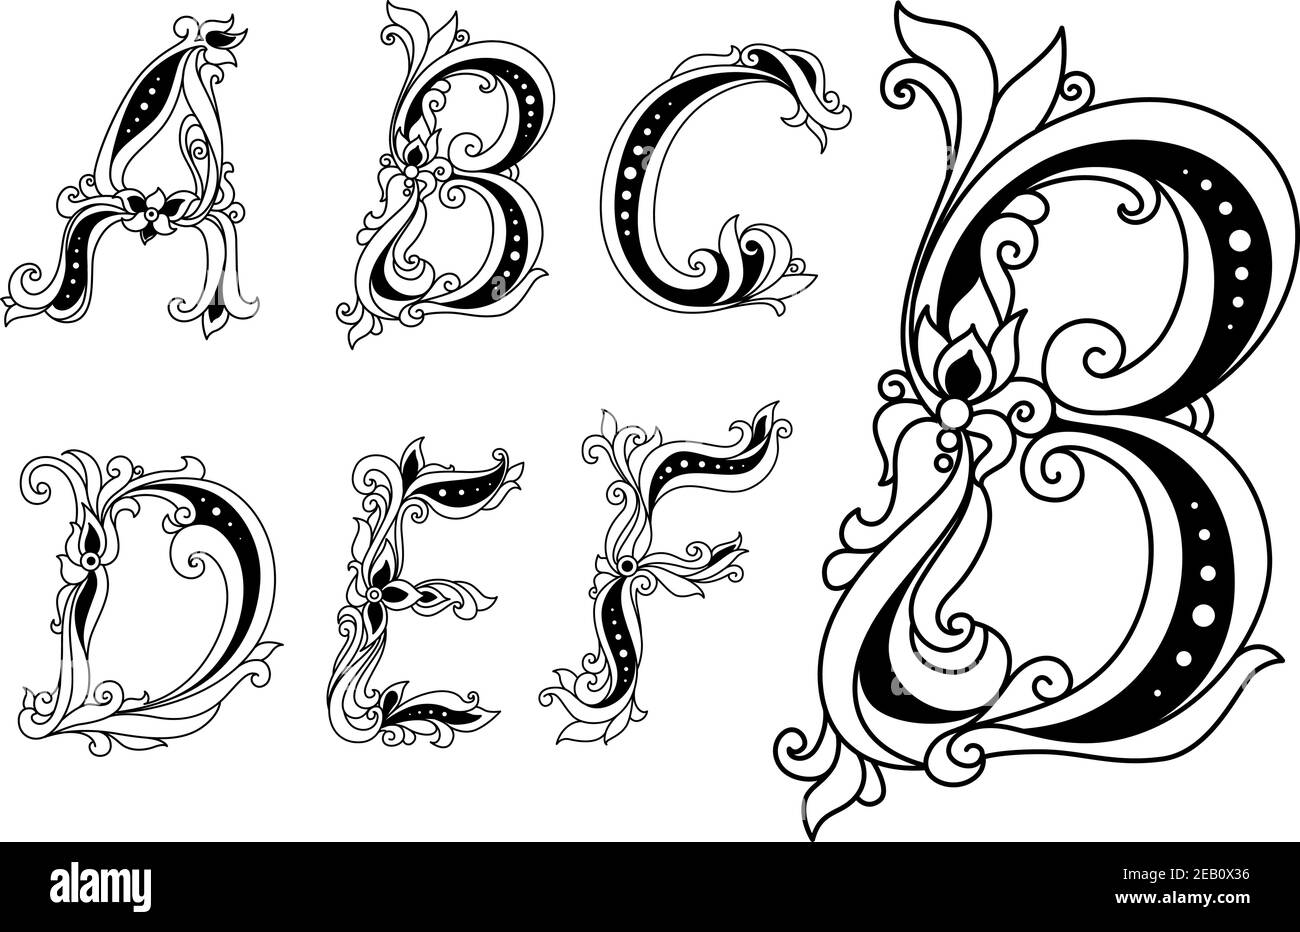 Majuscules lettres florales A, B, C, D ornées de fleurs et de feuilles pour un design romantique et vintage Illustration de Vecteur